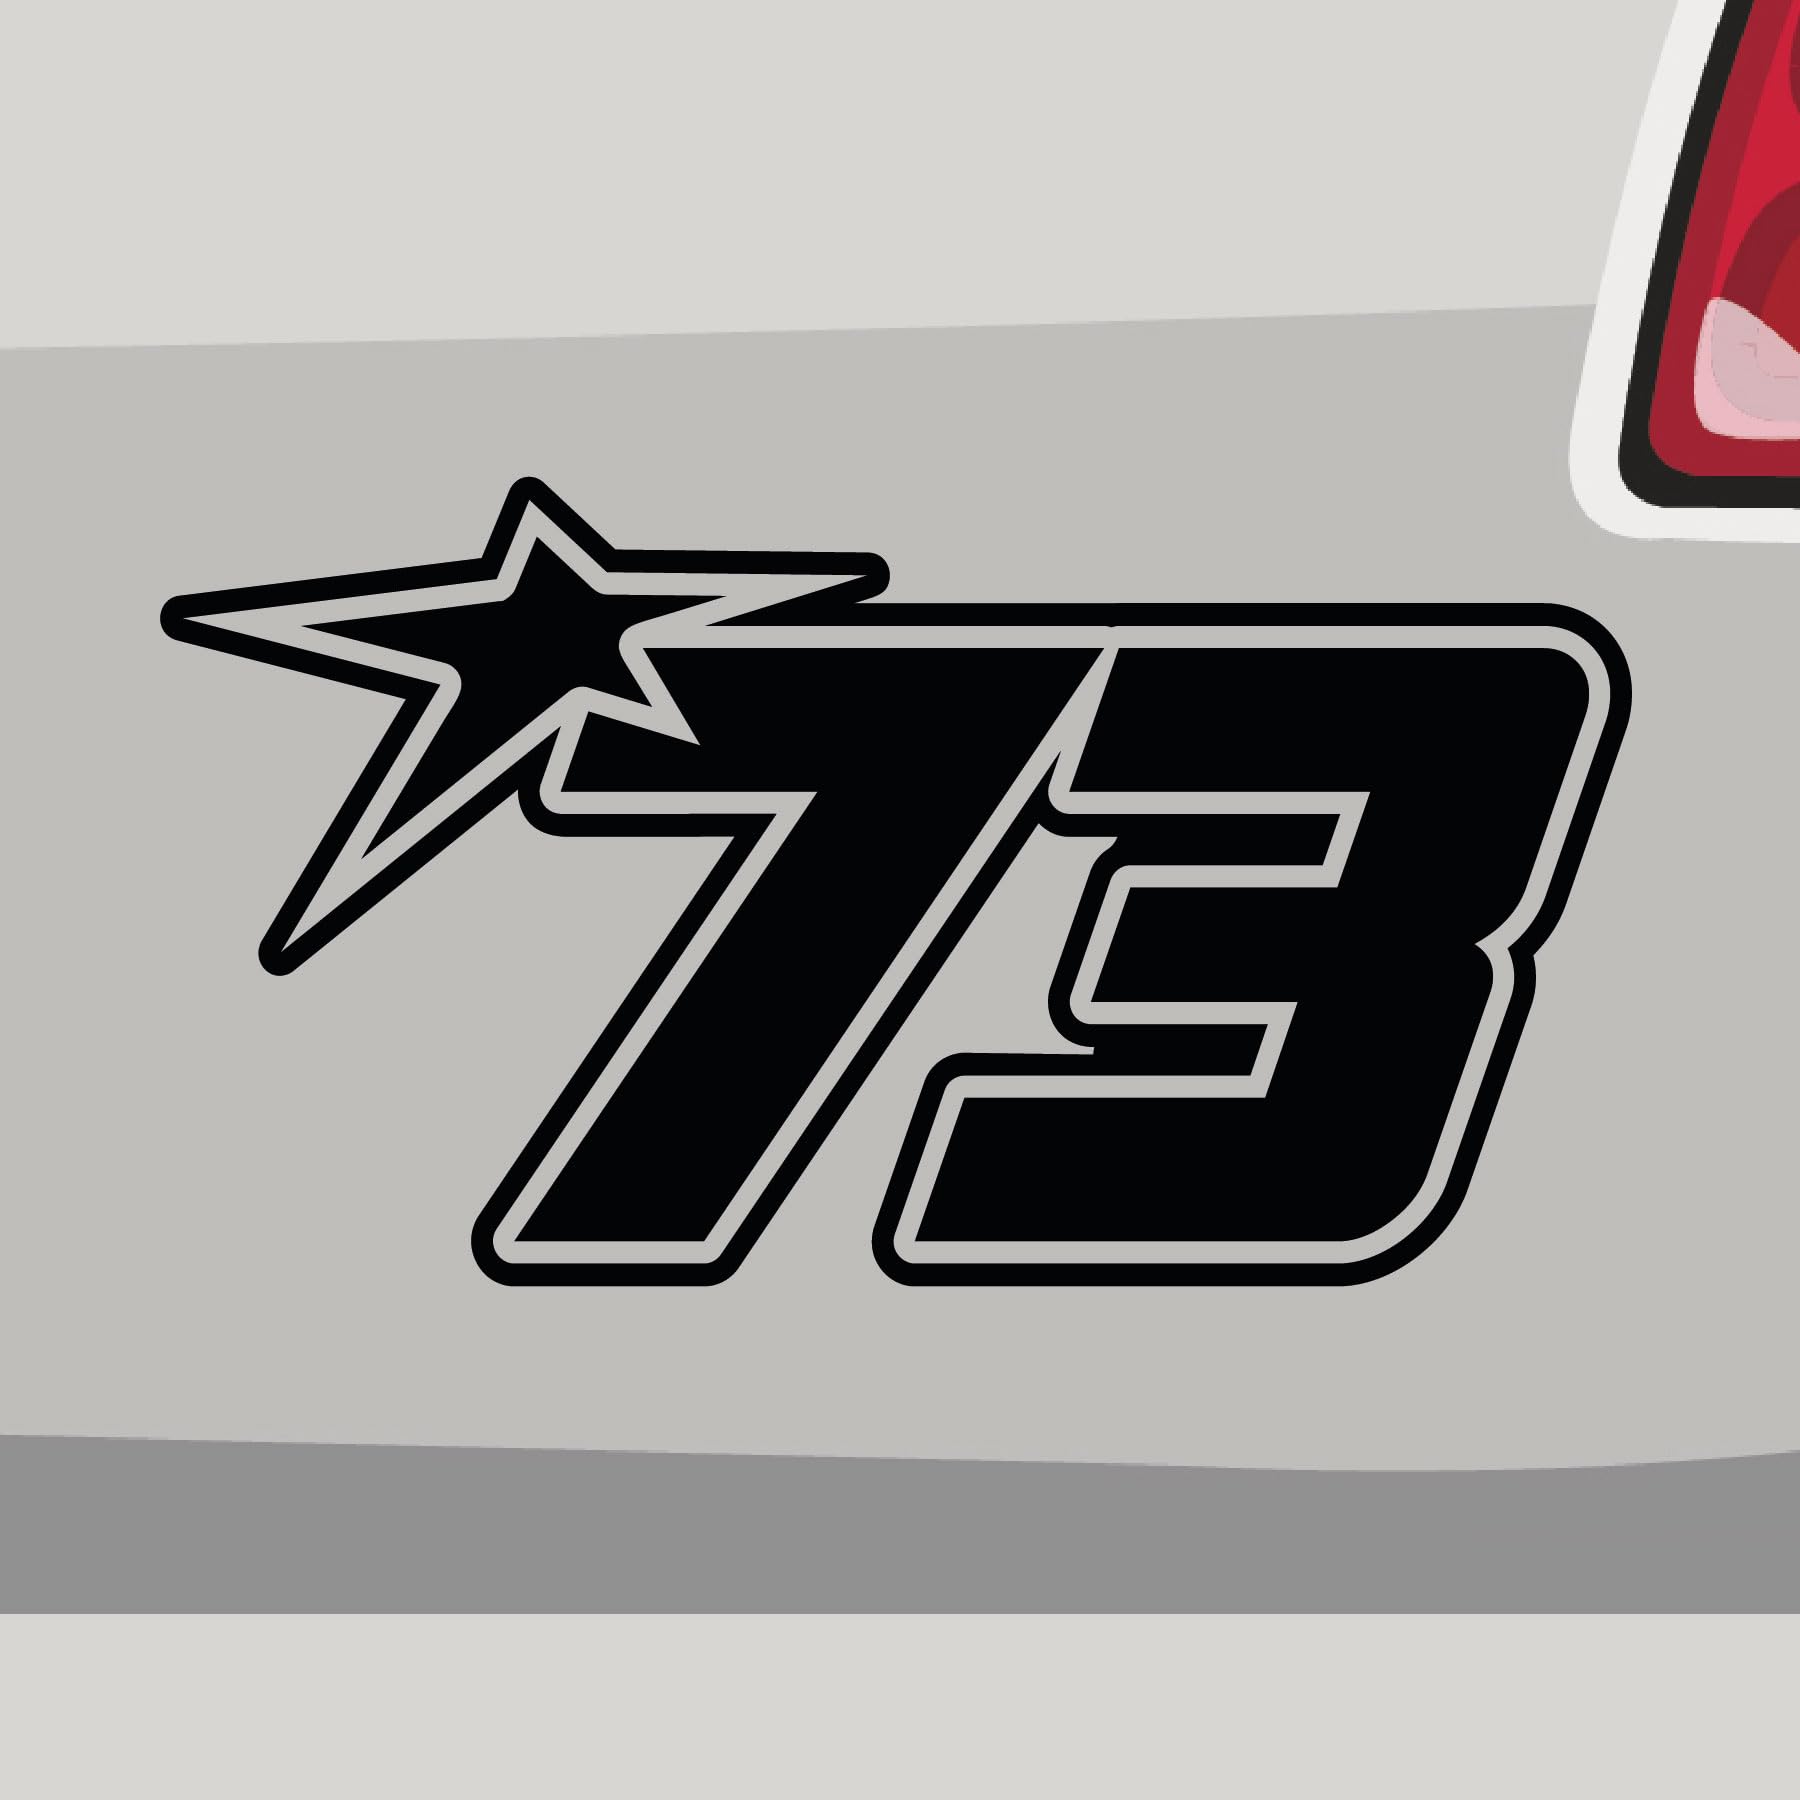 Stickerfreaks Startnummer 73 Aufkleber Race Sticker Stern Star Number Auto Bike Decal Aufkleber Größe: 45x25cm (XXL) | Farbe: 71-grau | Race Sticker Kleber Deko Tuning Startnummer von Stickerfreaks